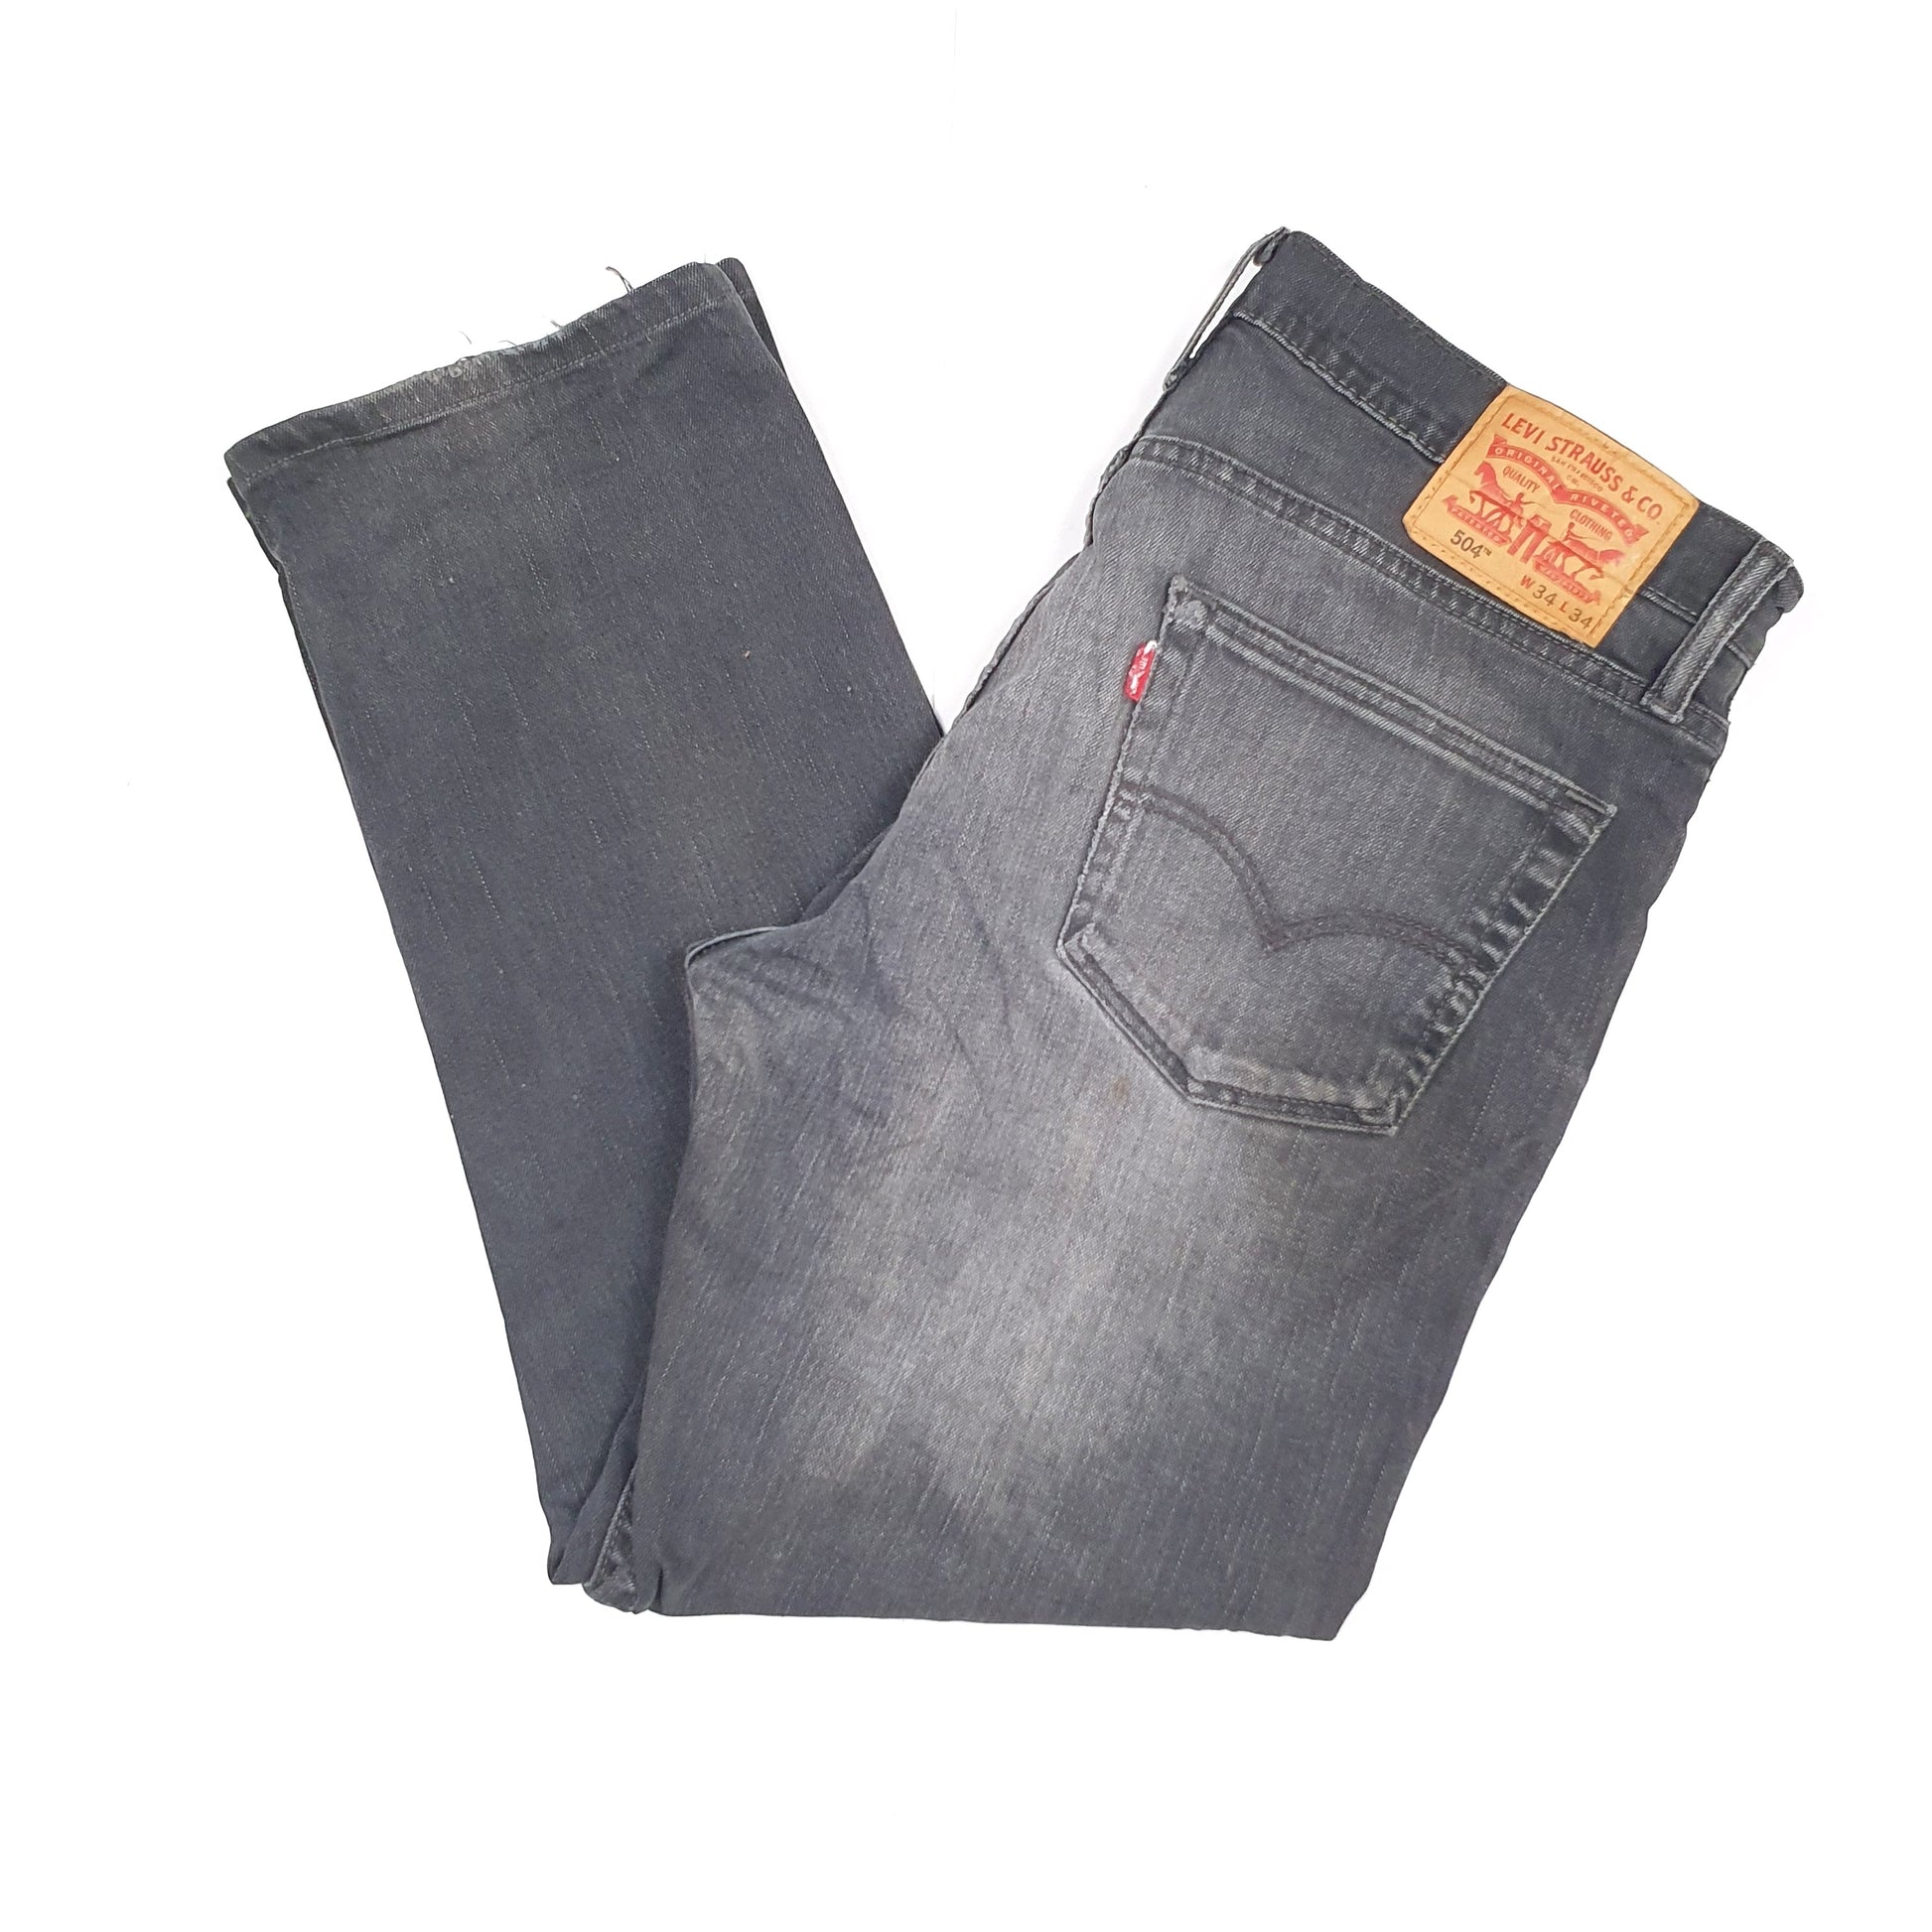 Grey Levis 504 Jeans